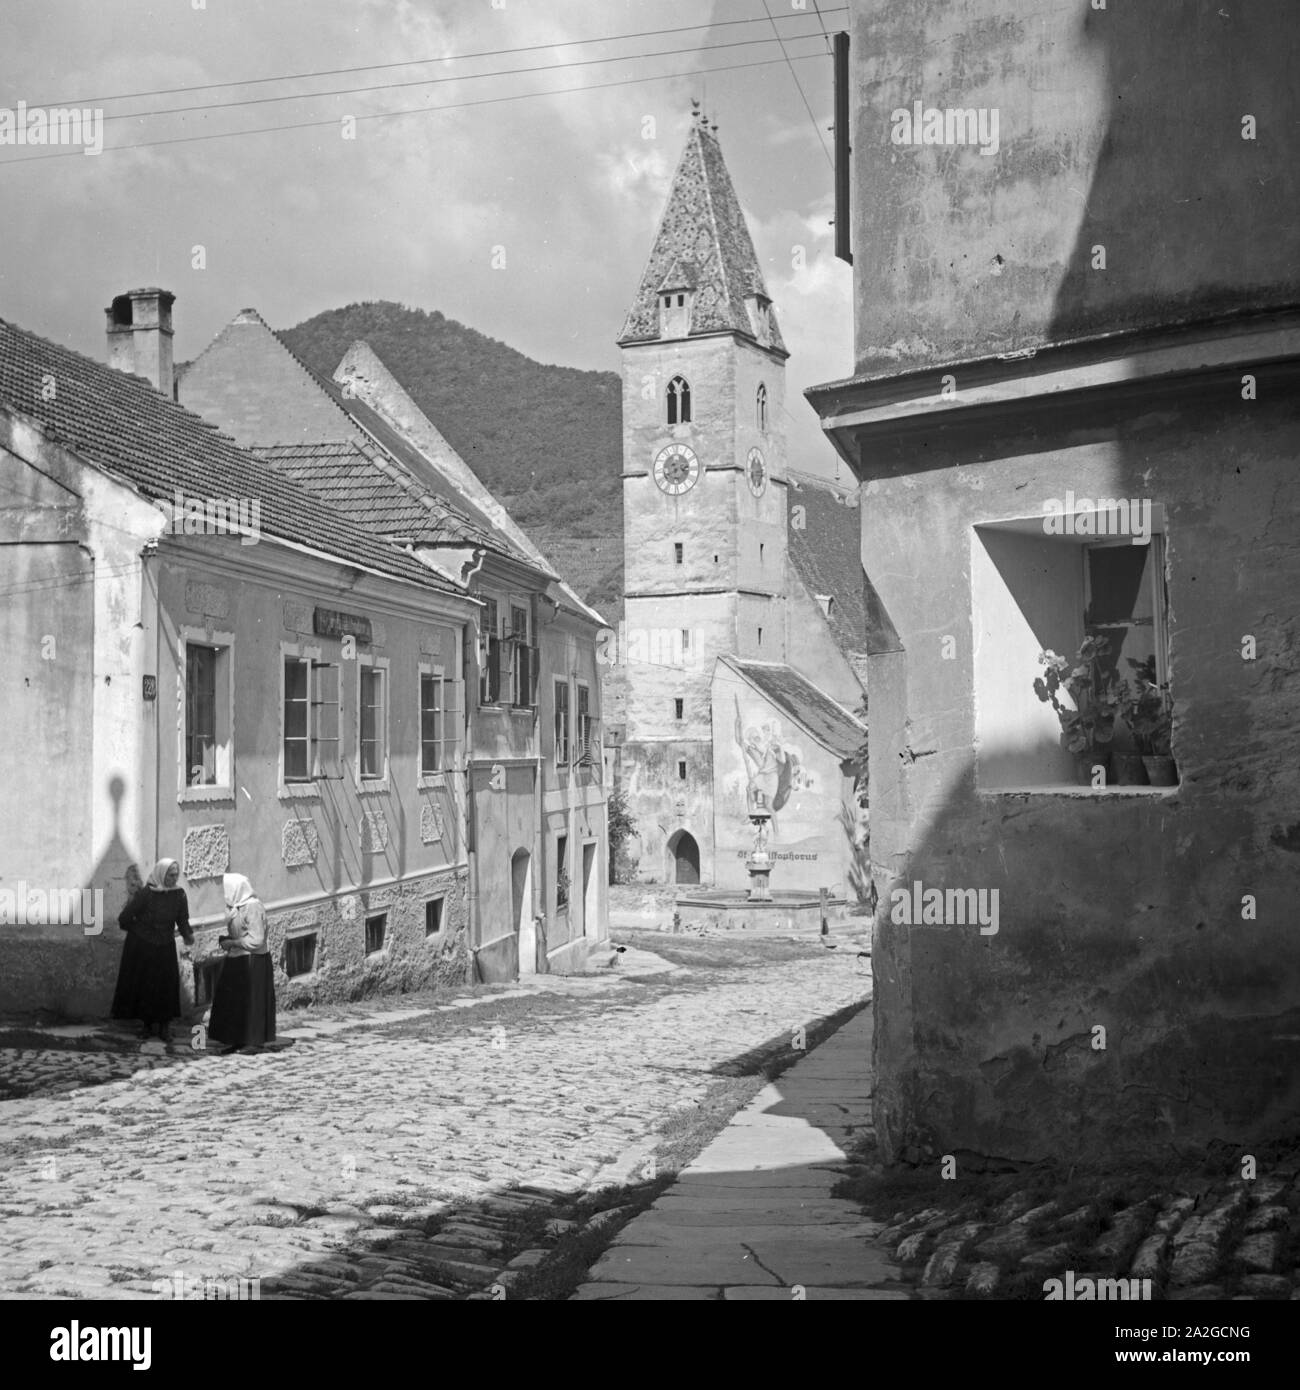 Die Pfarrkirche San Maurizio in der Gemeinde Sptz in Niederösterreich, 1930er Jahre. San Maurizio la chiesa di Spitz in Bassa Austria, 1930s. Foto Stock